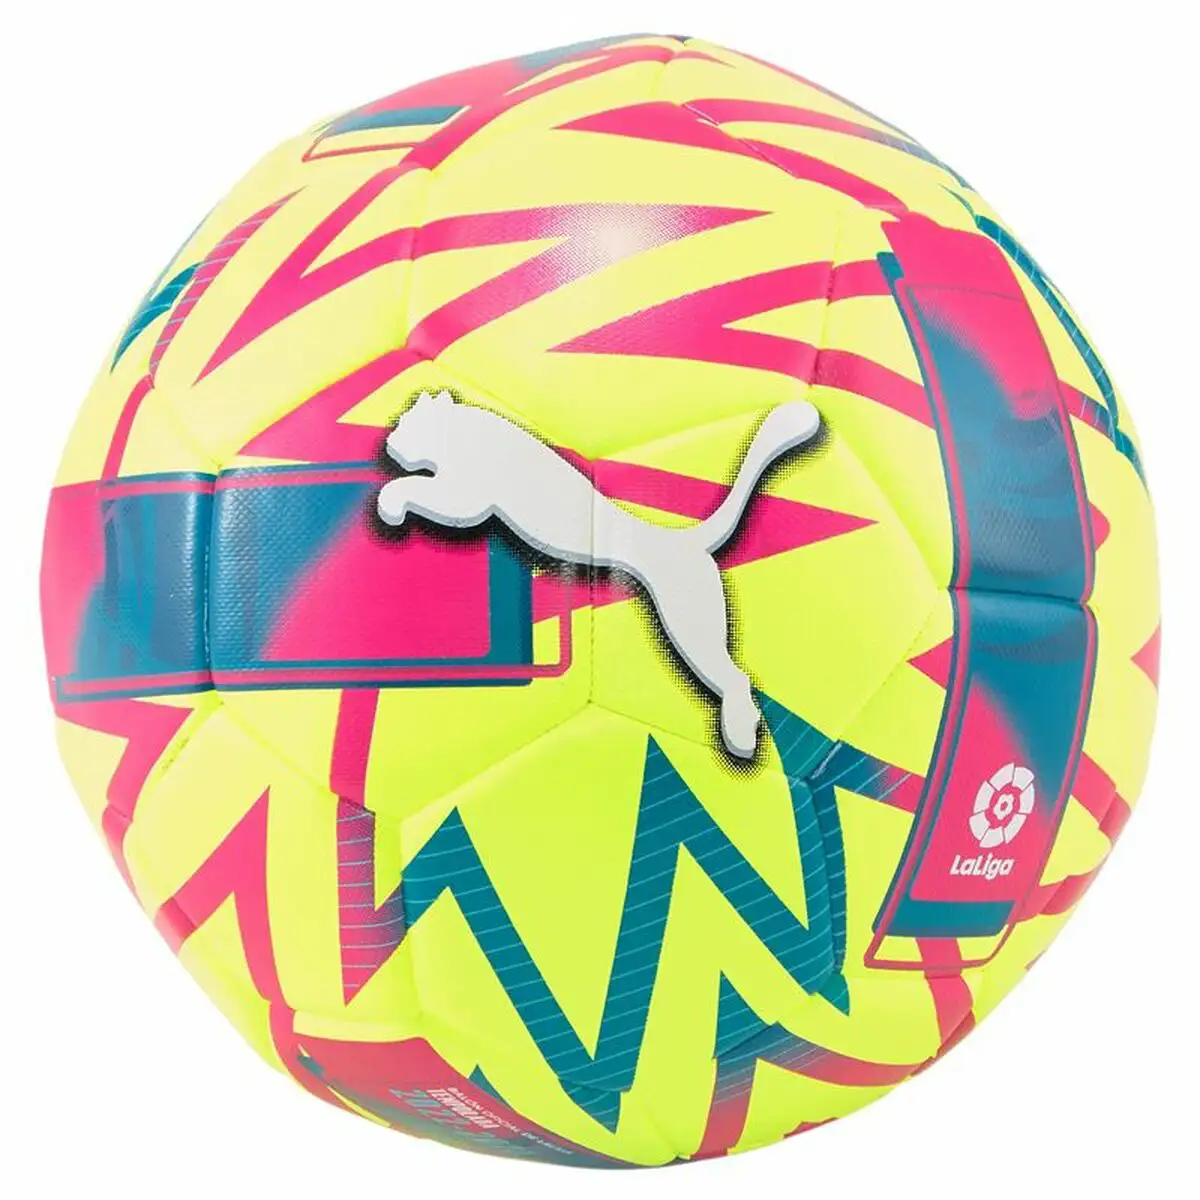 Ballon de football puma orbita la liga jaune 5_6541. DIAYTAR SENEGAL - L'Art de Choisir, l'Art de S'émerveiller. Explorez notre gamme de produits et laissez-vous émerveiller par des créations authentiques et des designs modernes.